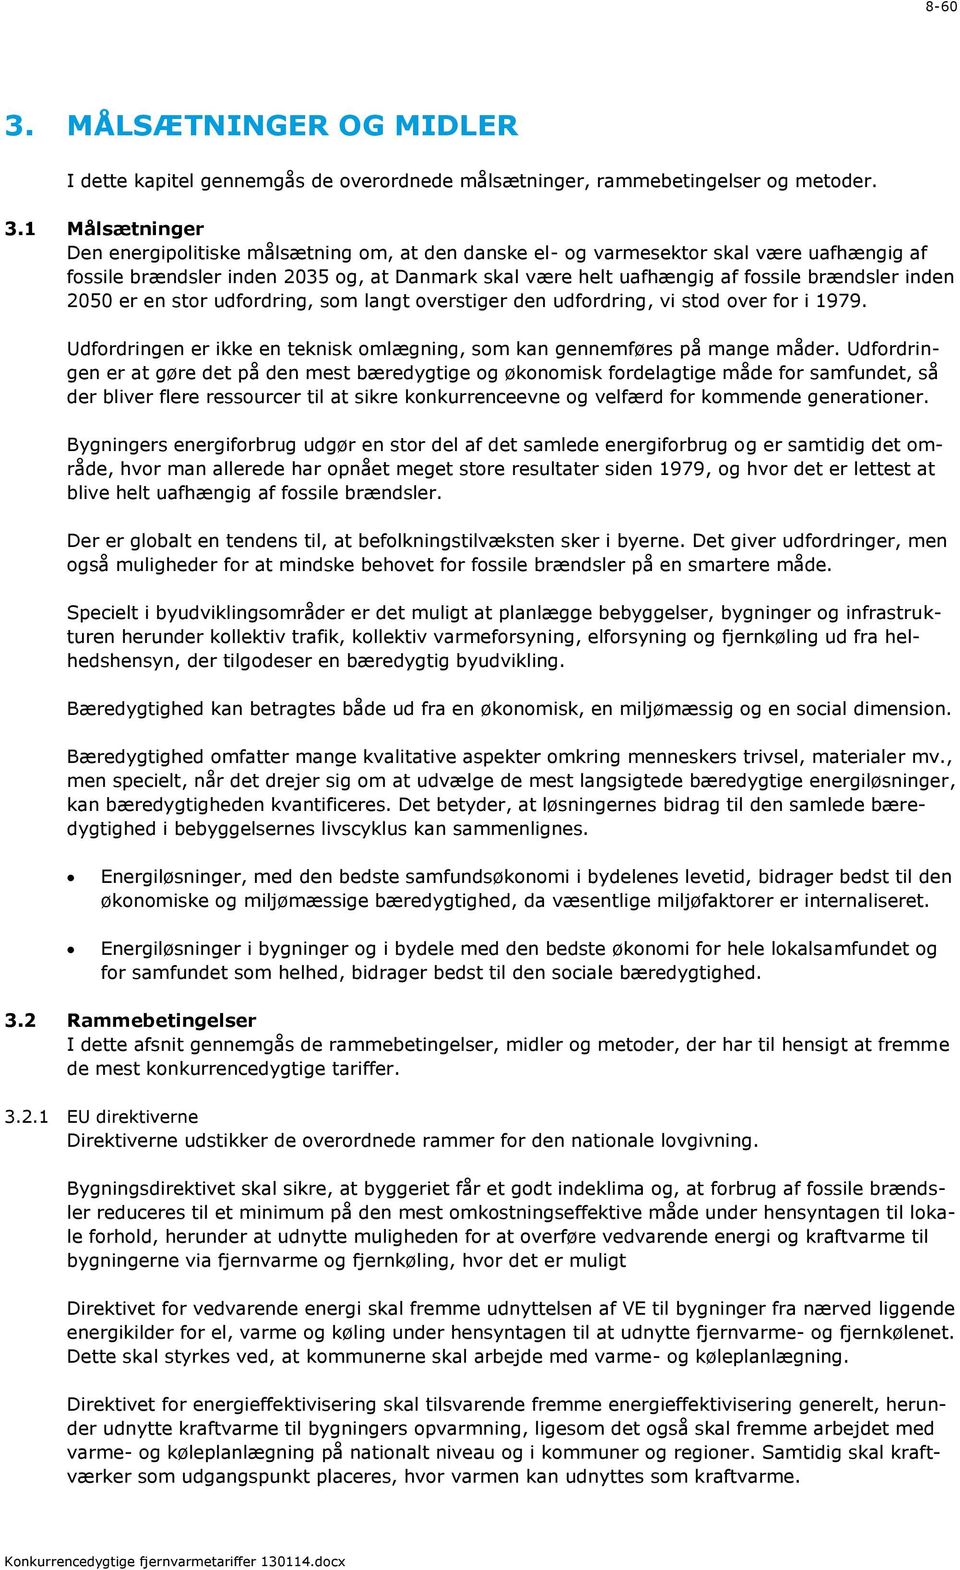 1 Målsætninger Den energipolitiske målsætning om, at den danske el- og varmesektor skal være uafhængig af fossile brændsler inden 2035 og, at Danmark skal være helt uafhængig af fossile brændsler